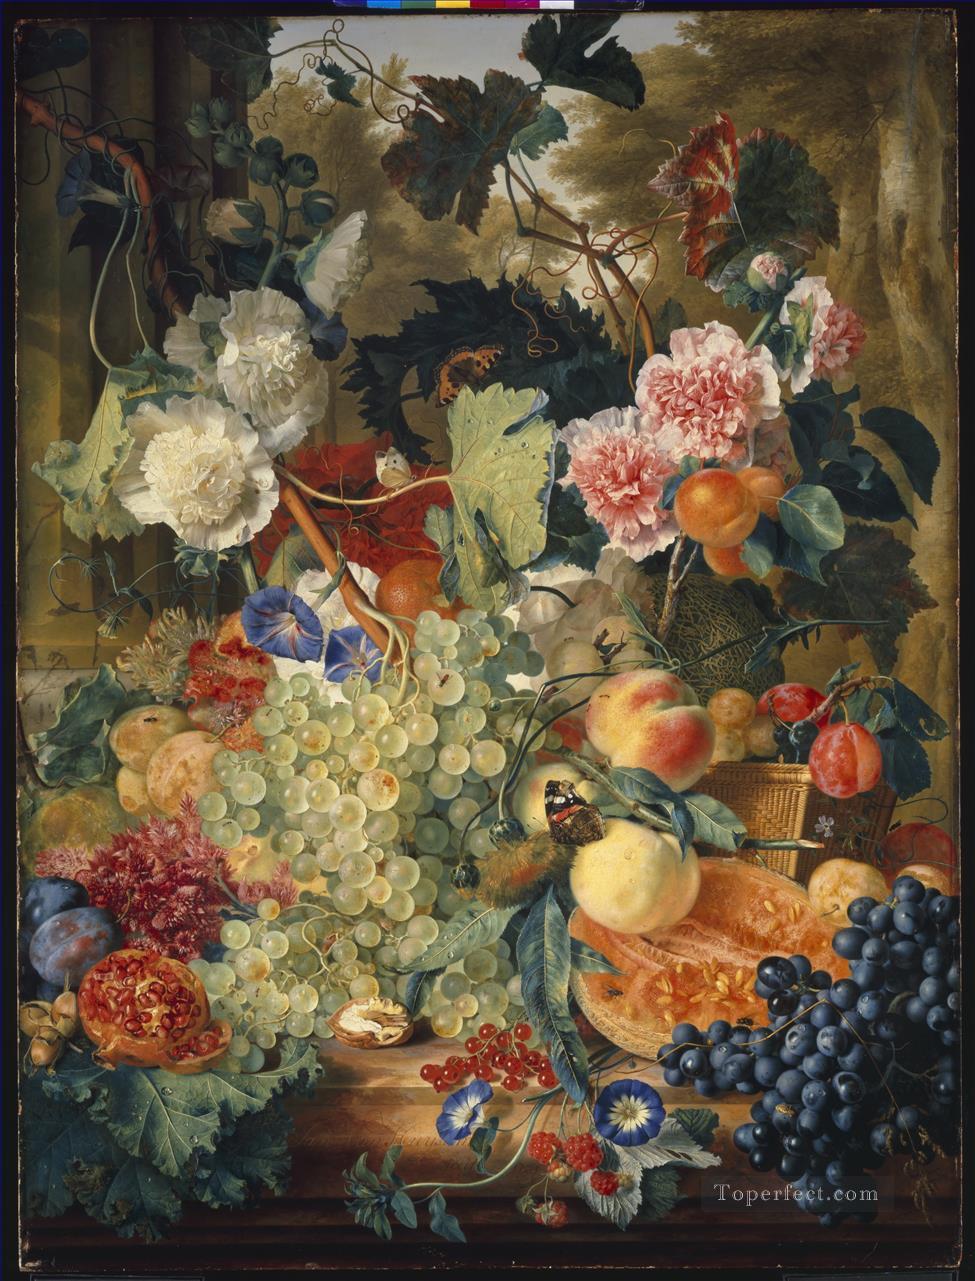 大理石の板の上に描かれた花と果物の静物画_1 ヤン・ファン・ホイスム油絵